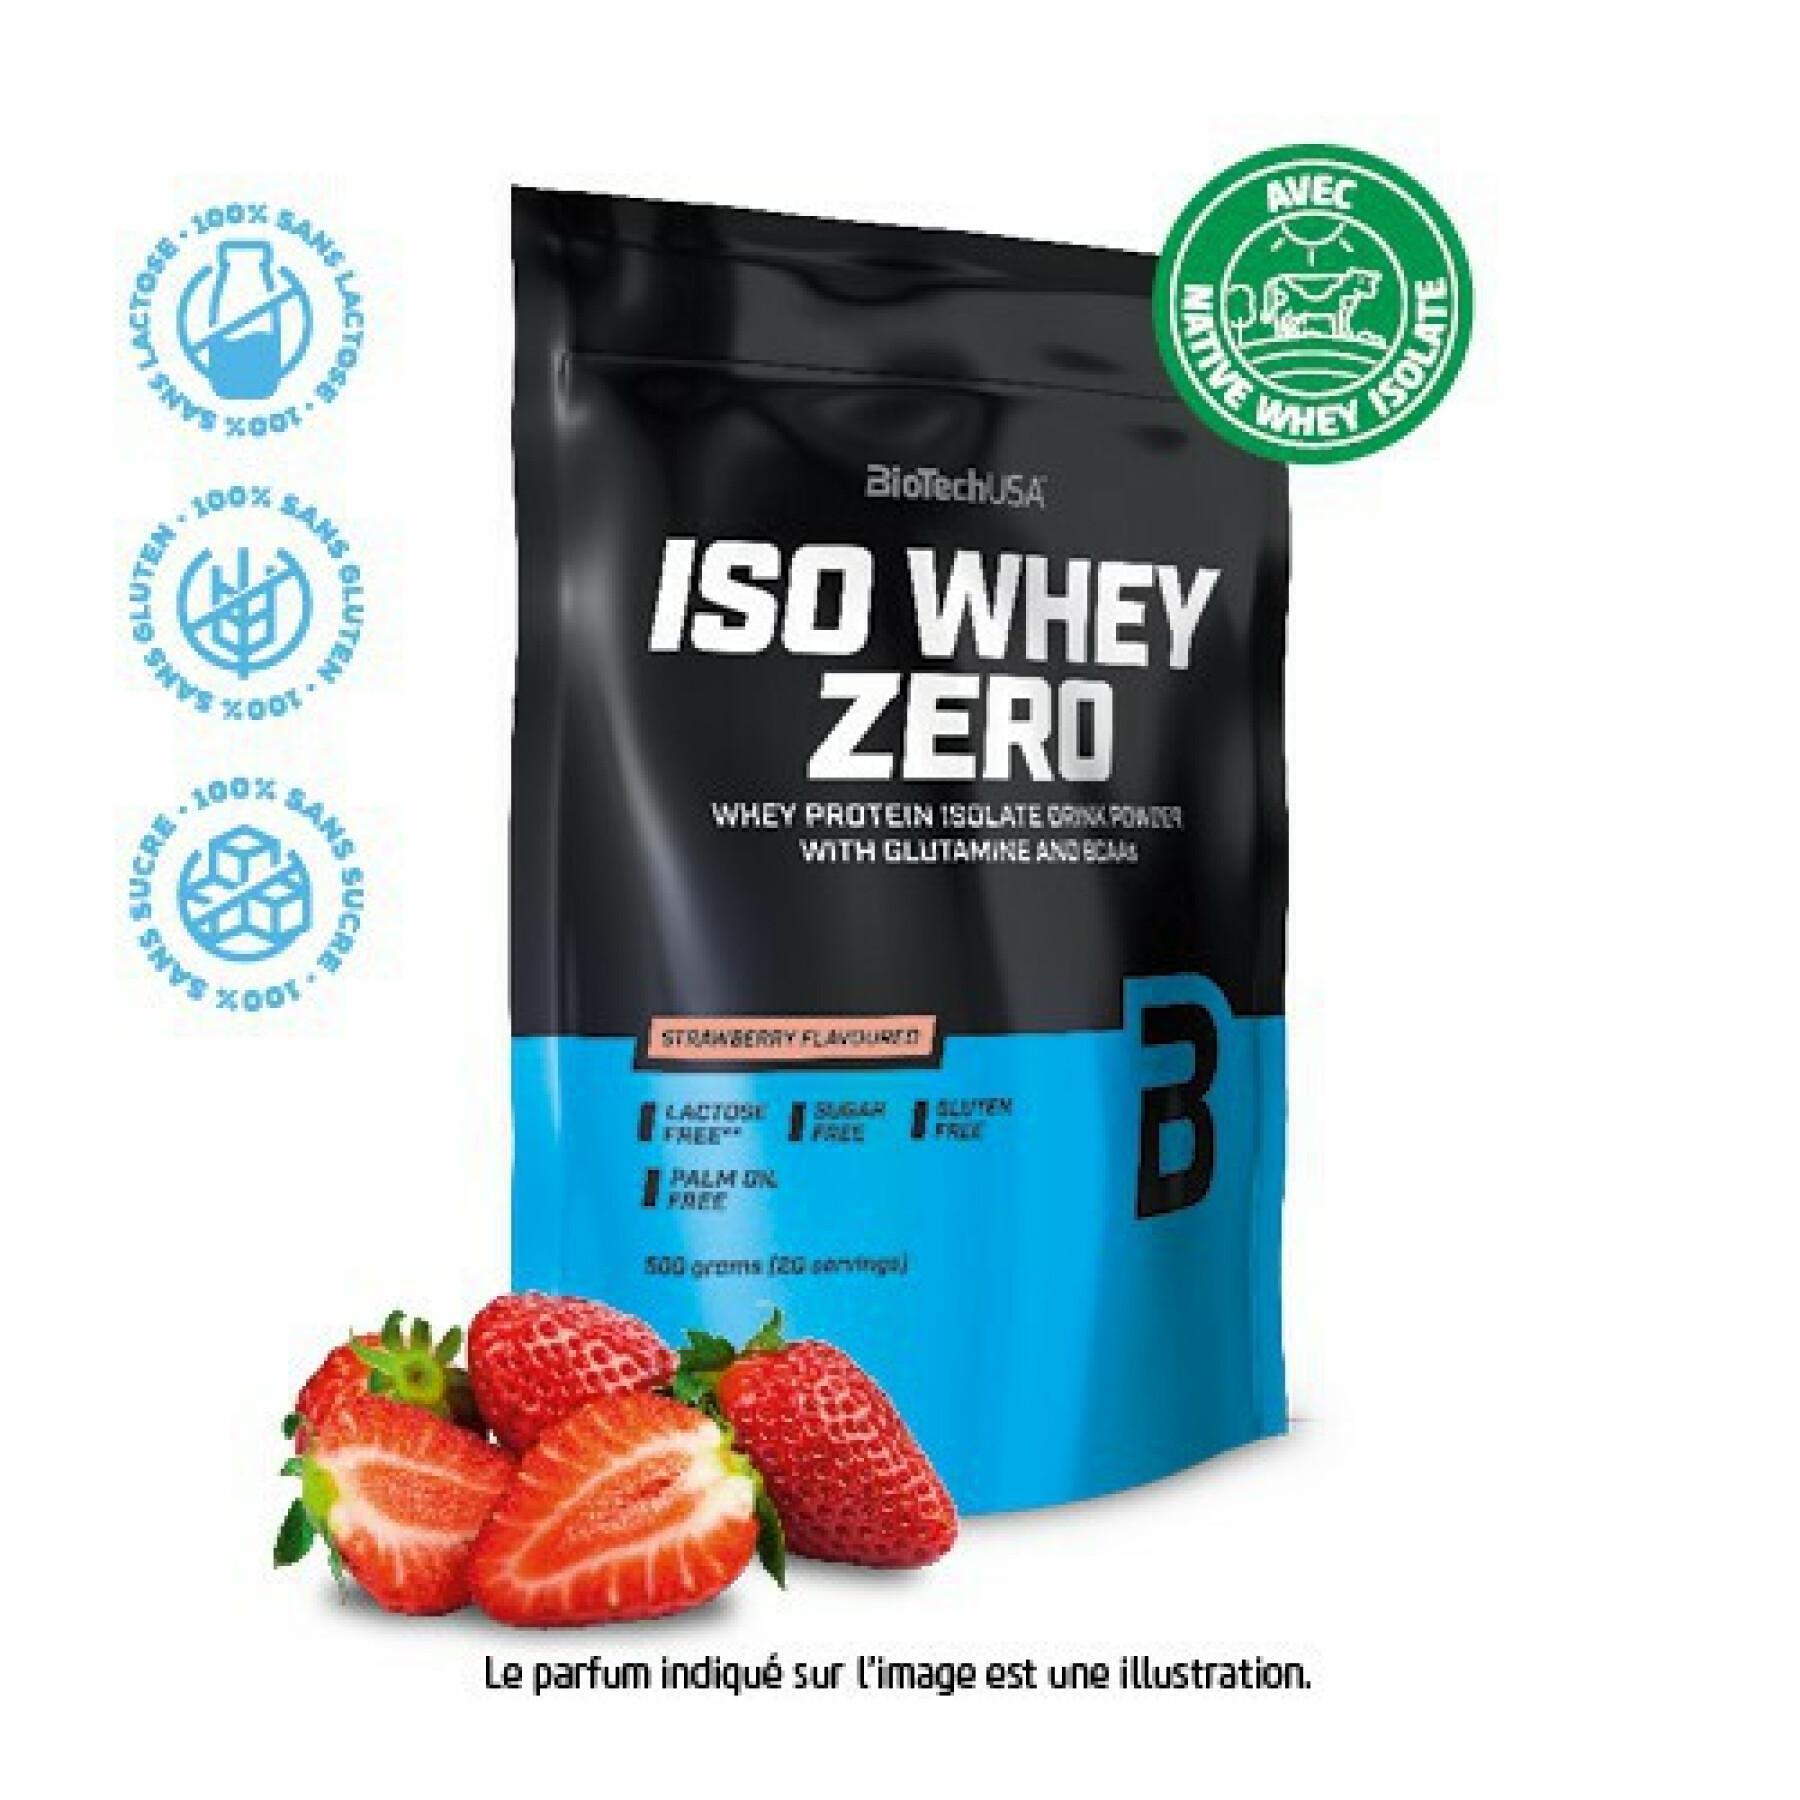 Confezione da 10 sacchetti di proteine Biotech USA iso whey zero lactose free - Fraise - 500g